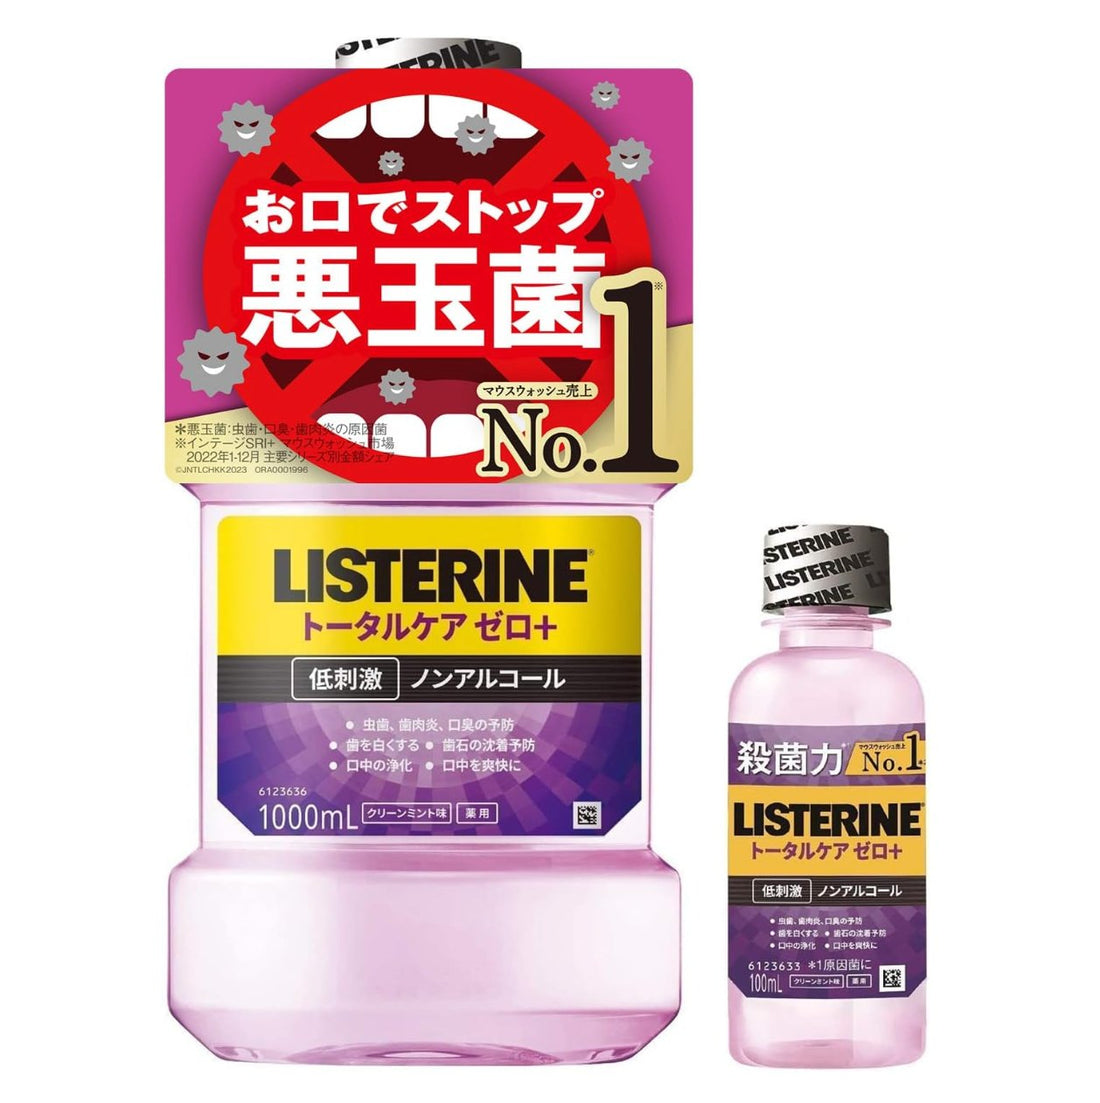 LISTERINE [Quasi-drug] Medicinal Listerine Total Care Zero Plus Mouthwash Liquid Toothpaste Hypoallergenic Non-Alcoholic Clean Mint Flavor 1000ml + Portable Bonus 100ml - NihonMura